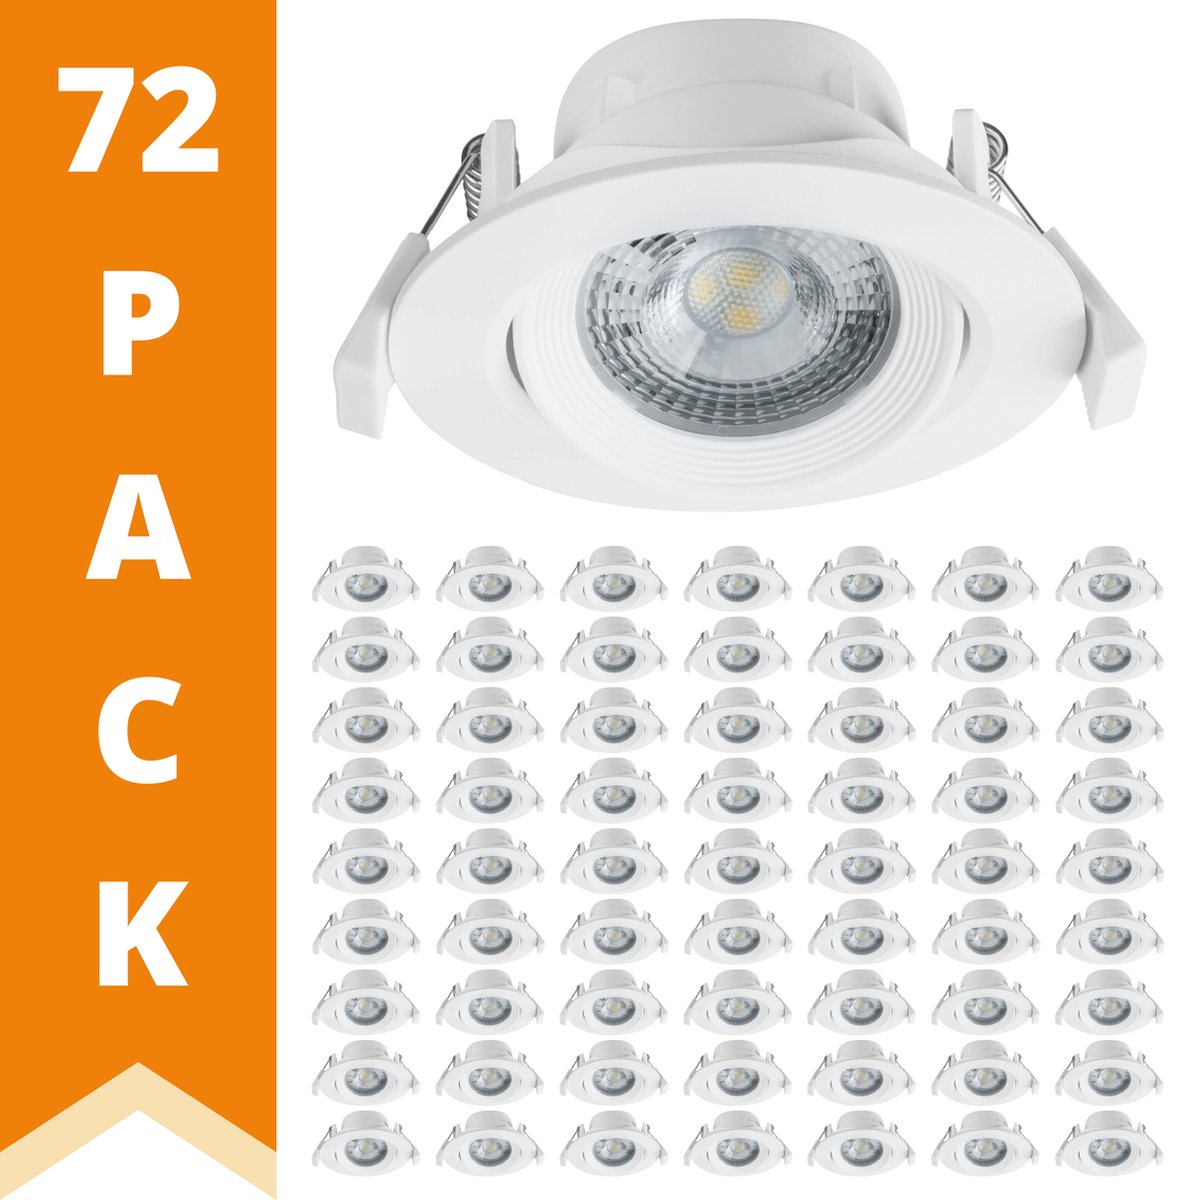 EasyFix LED Inbouwspots wit - Dimbaar warm wit licht - Draai- en kantelbaar - 72 stuks